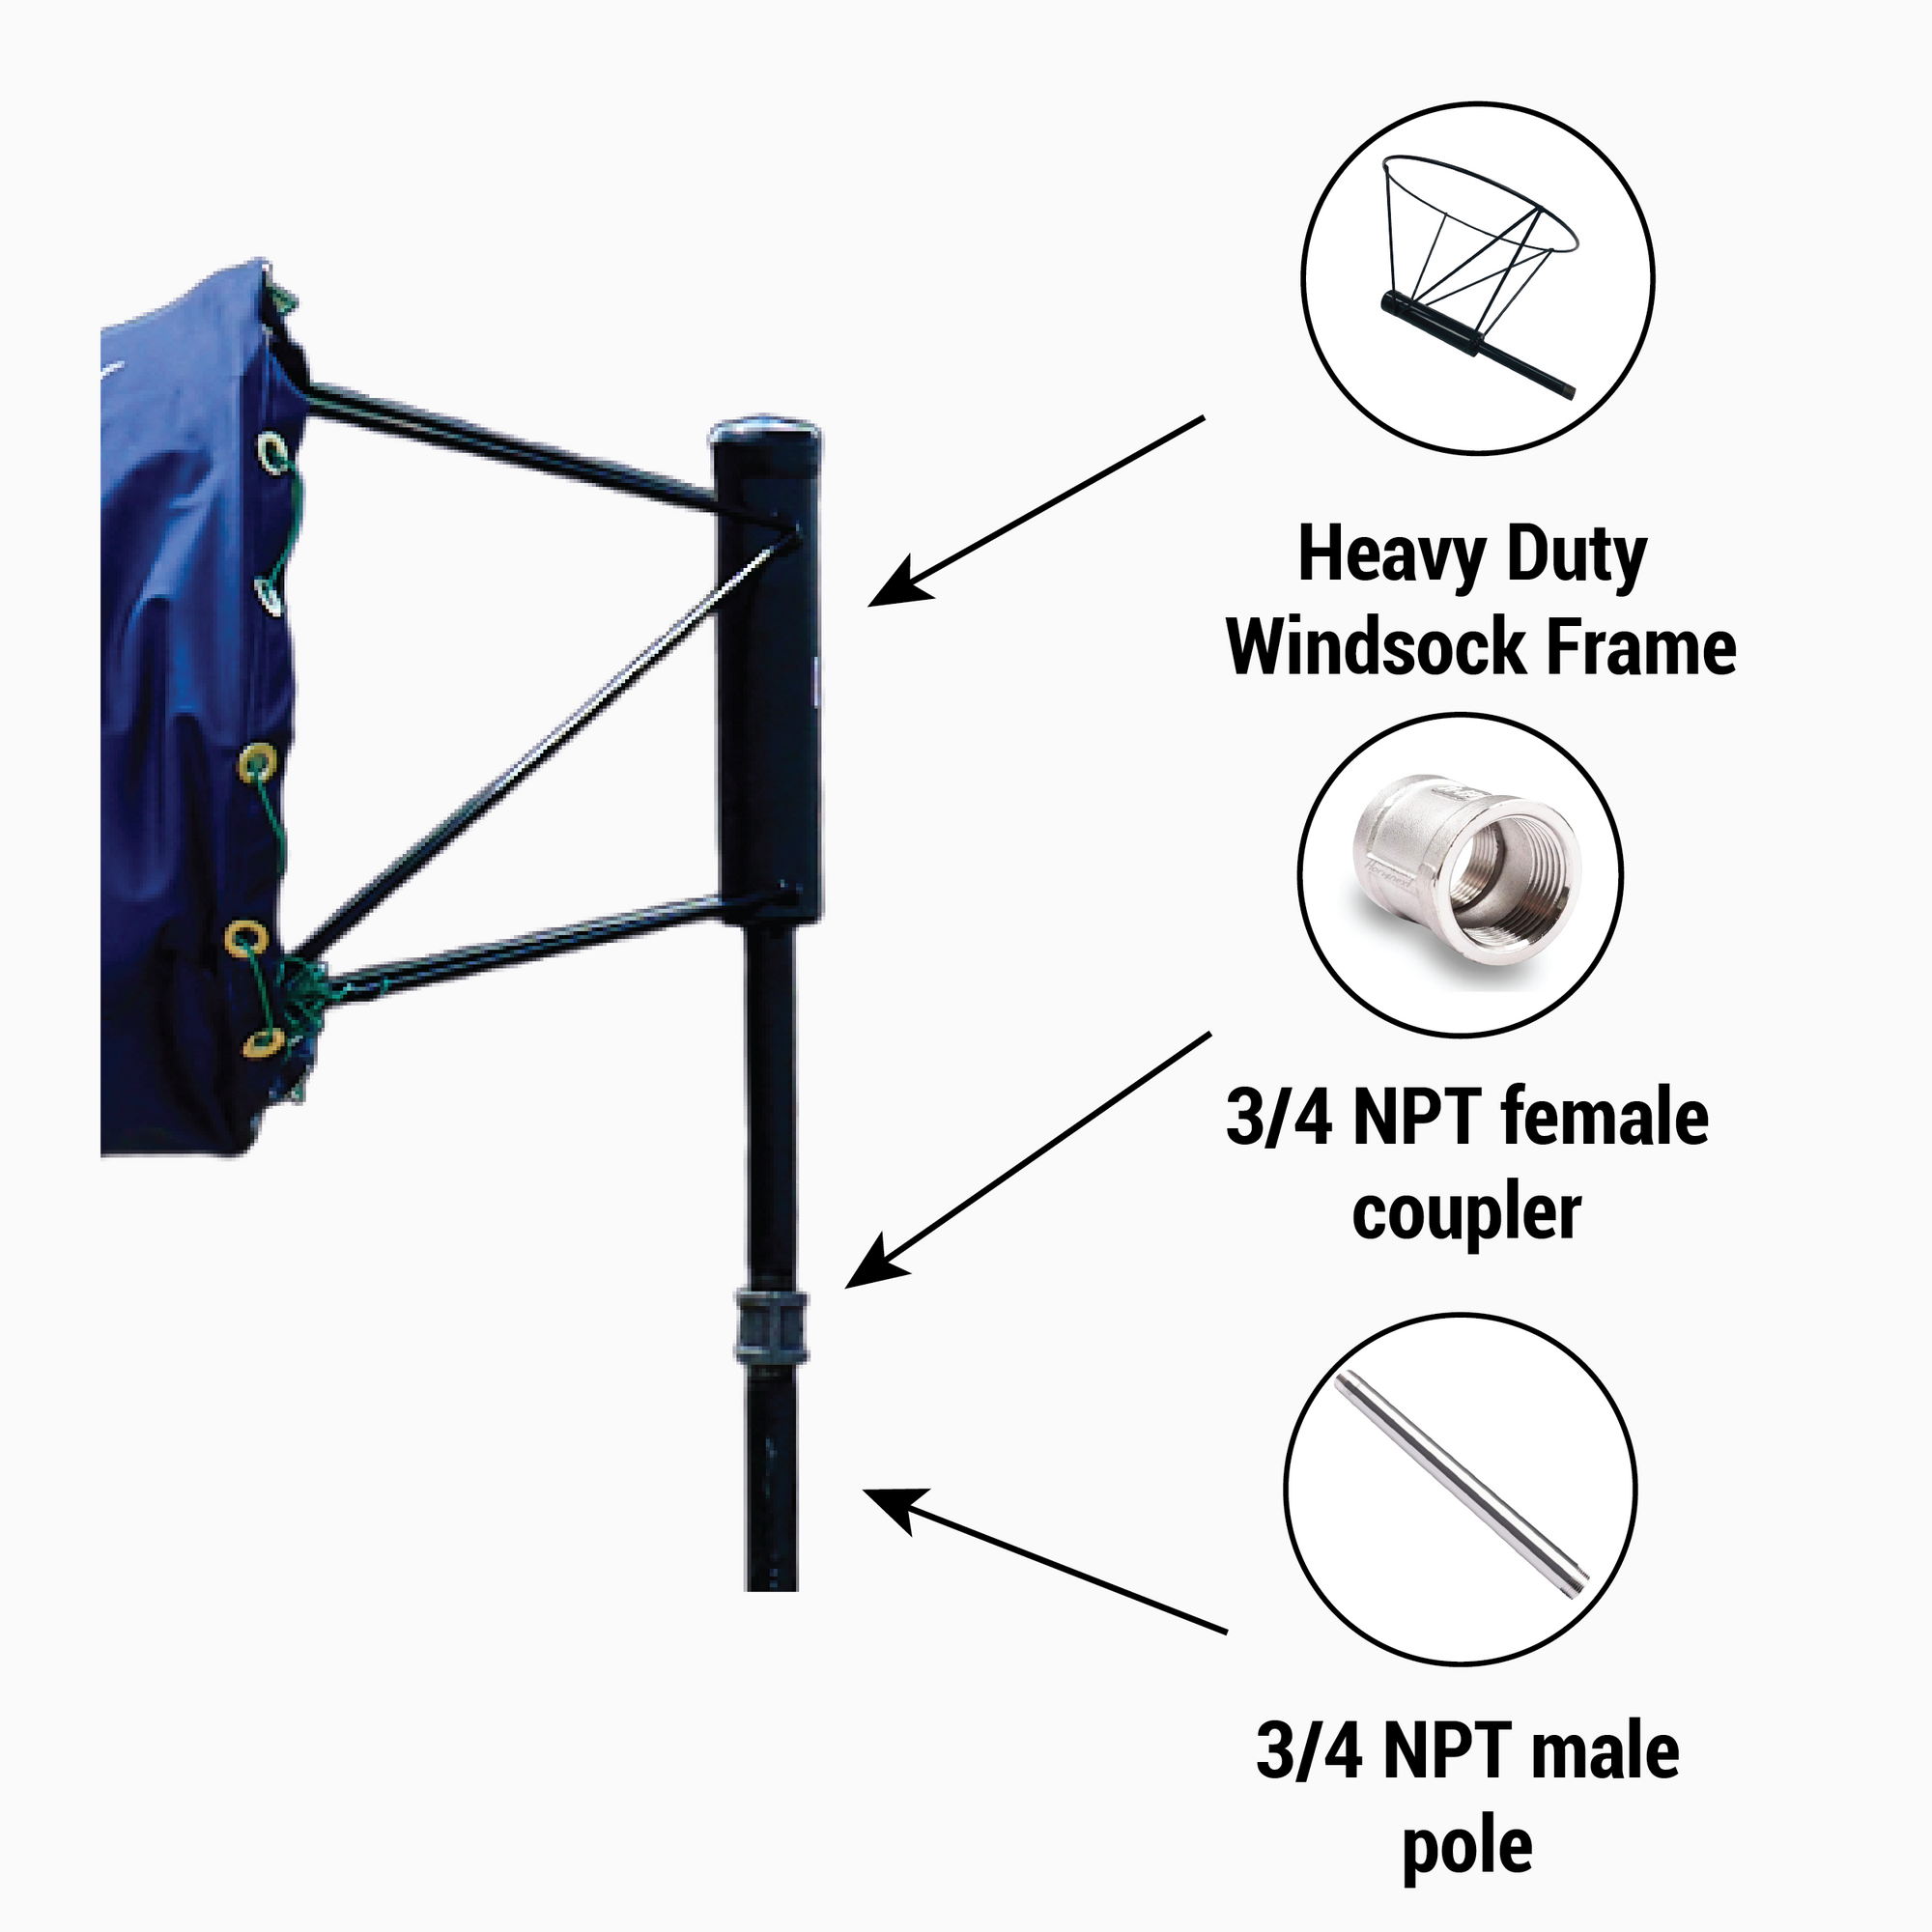 How to Install a Windsock Frame onto a Pole